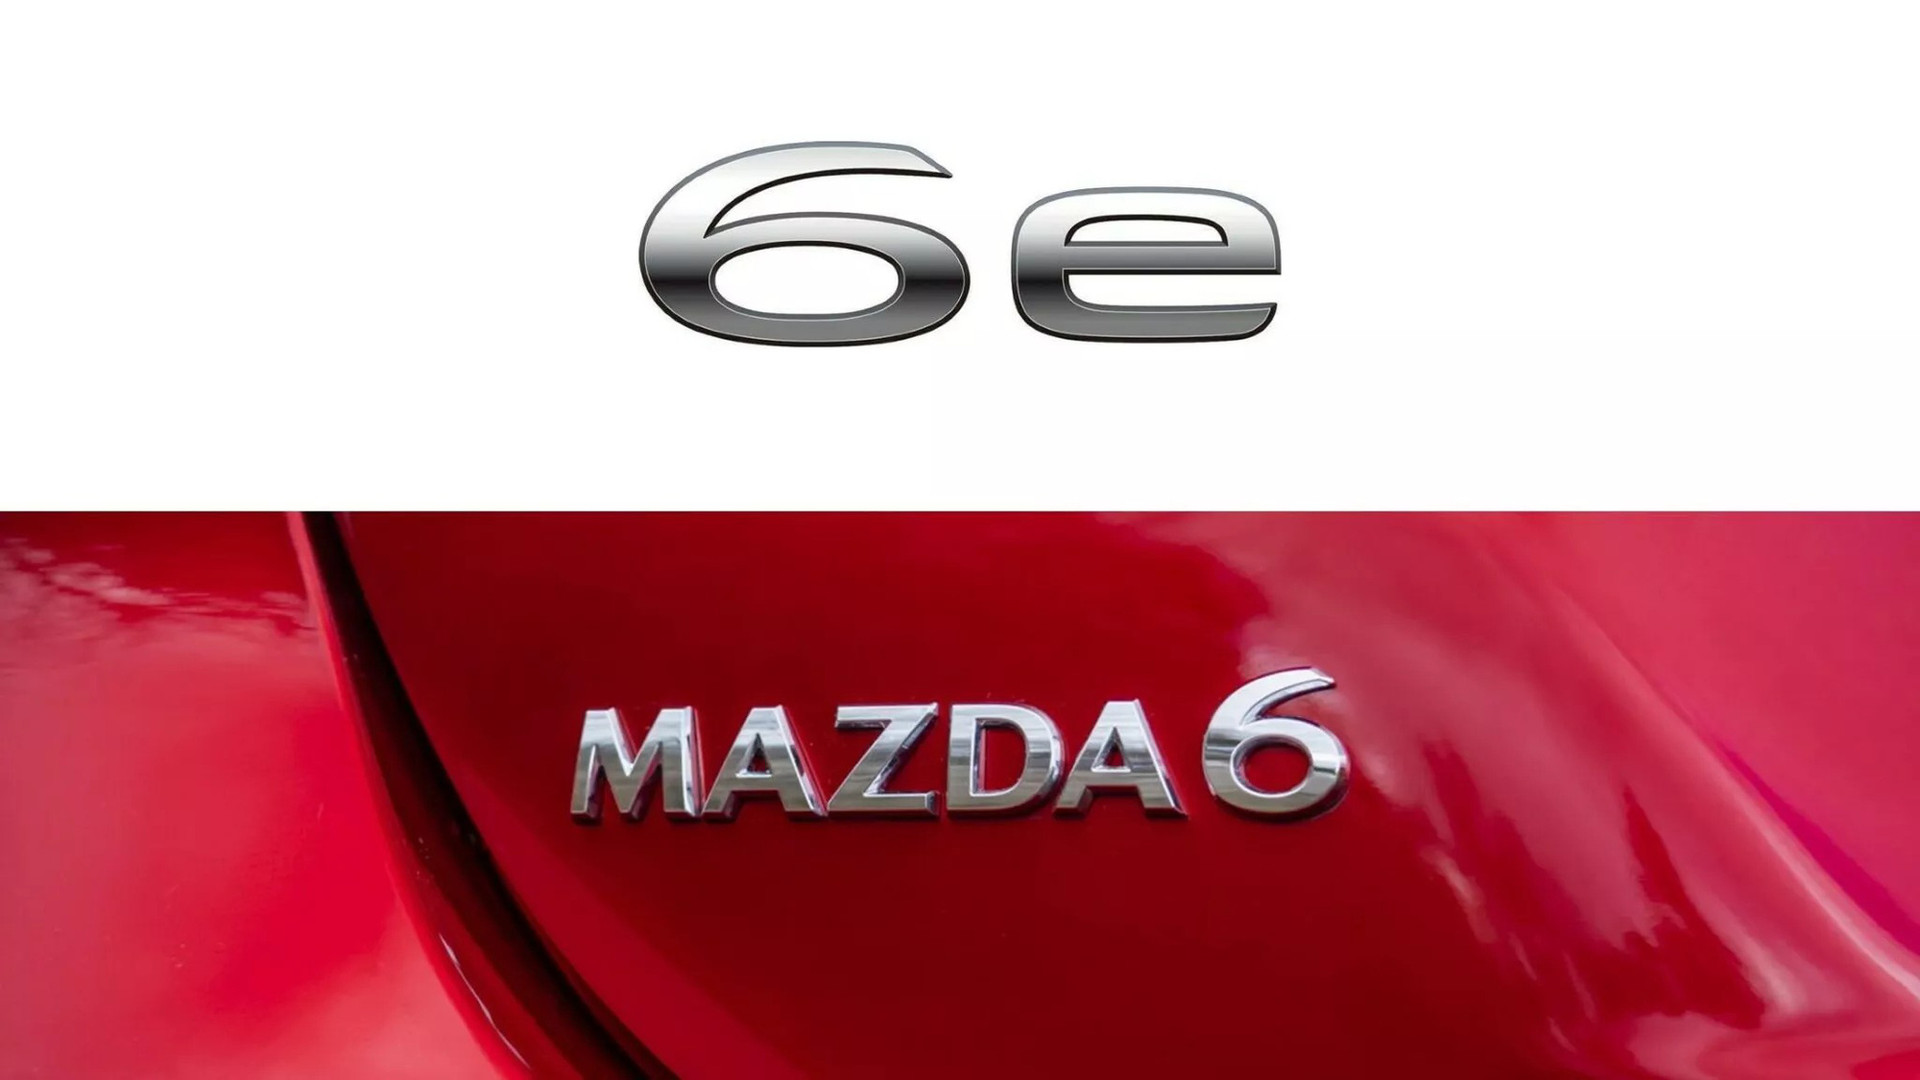 Thiết kế logo 6e được đăng ký bản quyền mới cùng logo cũ Mazda6 đang sử dụng - Ảnh: Motor1